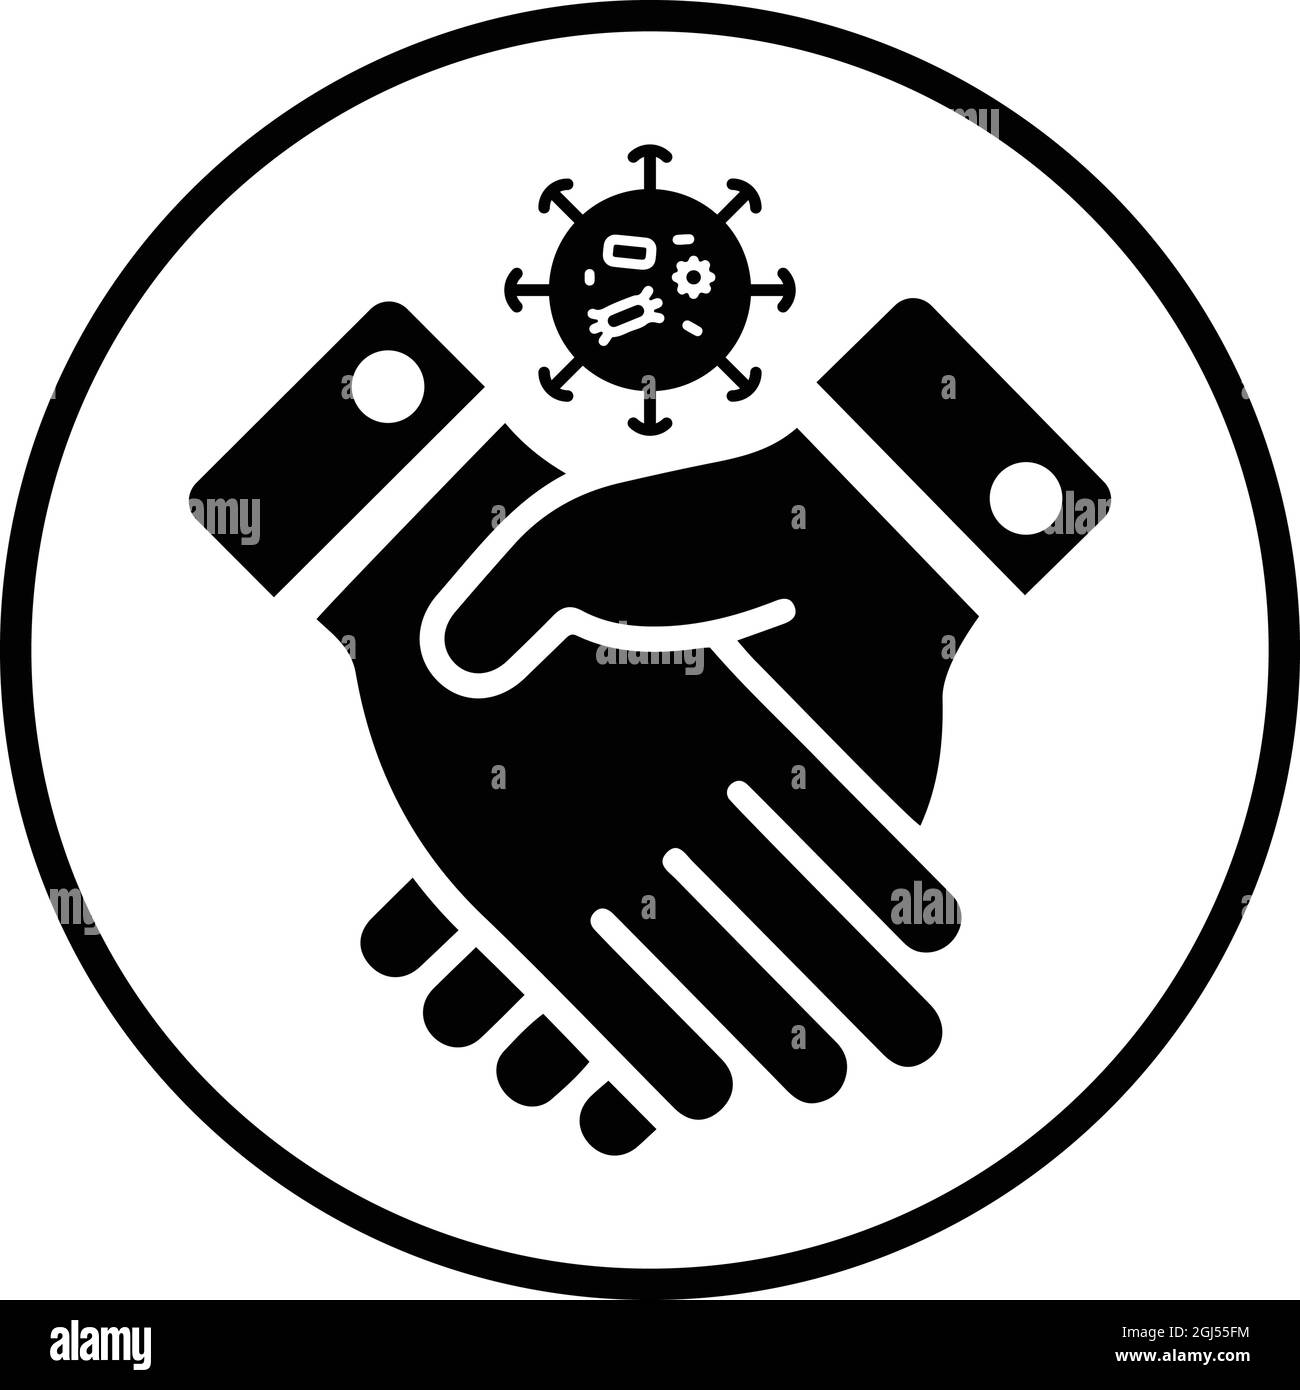 L'icona del contagio, del coronavirus, della stretta di mano è isolata su sfondo bianco. Utilizzo per grafica e web design o scopi commerciali. File EPS vettoriale. Illustrazione Vettoriale